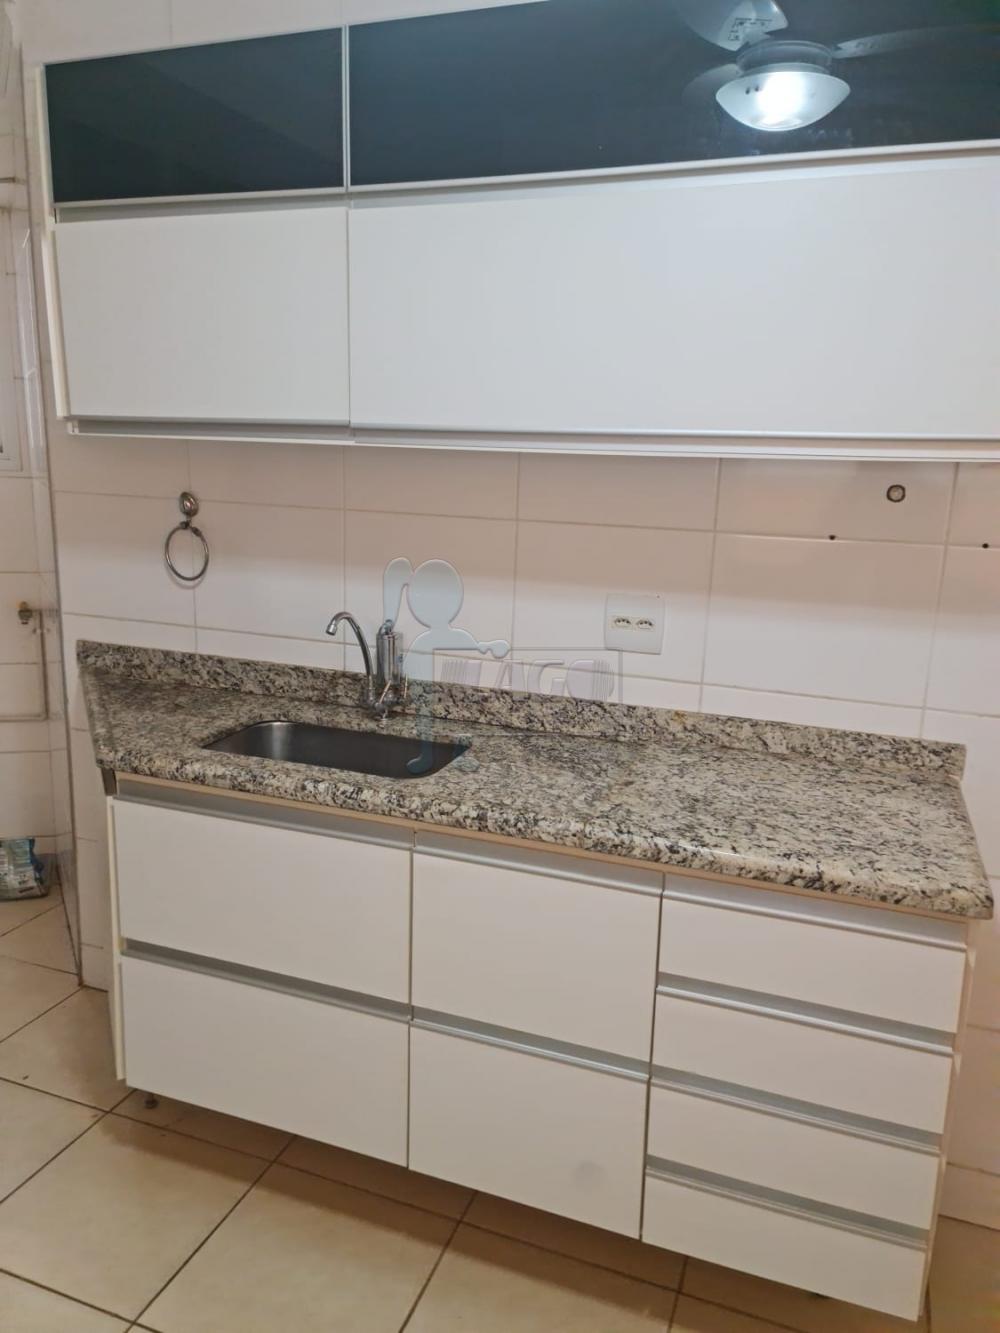 Alugar Apartamento / Duplex em Ribeirão Preto R$ 3.500,00 - Foto 7